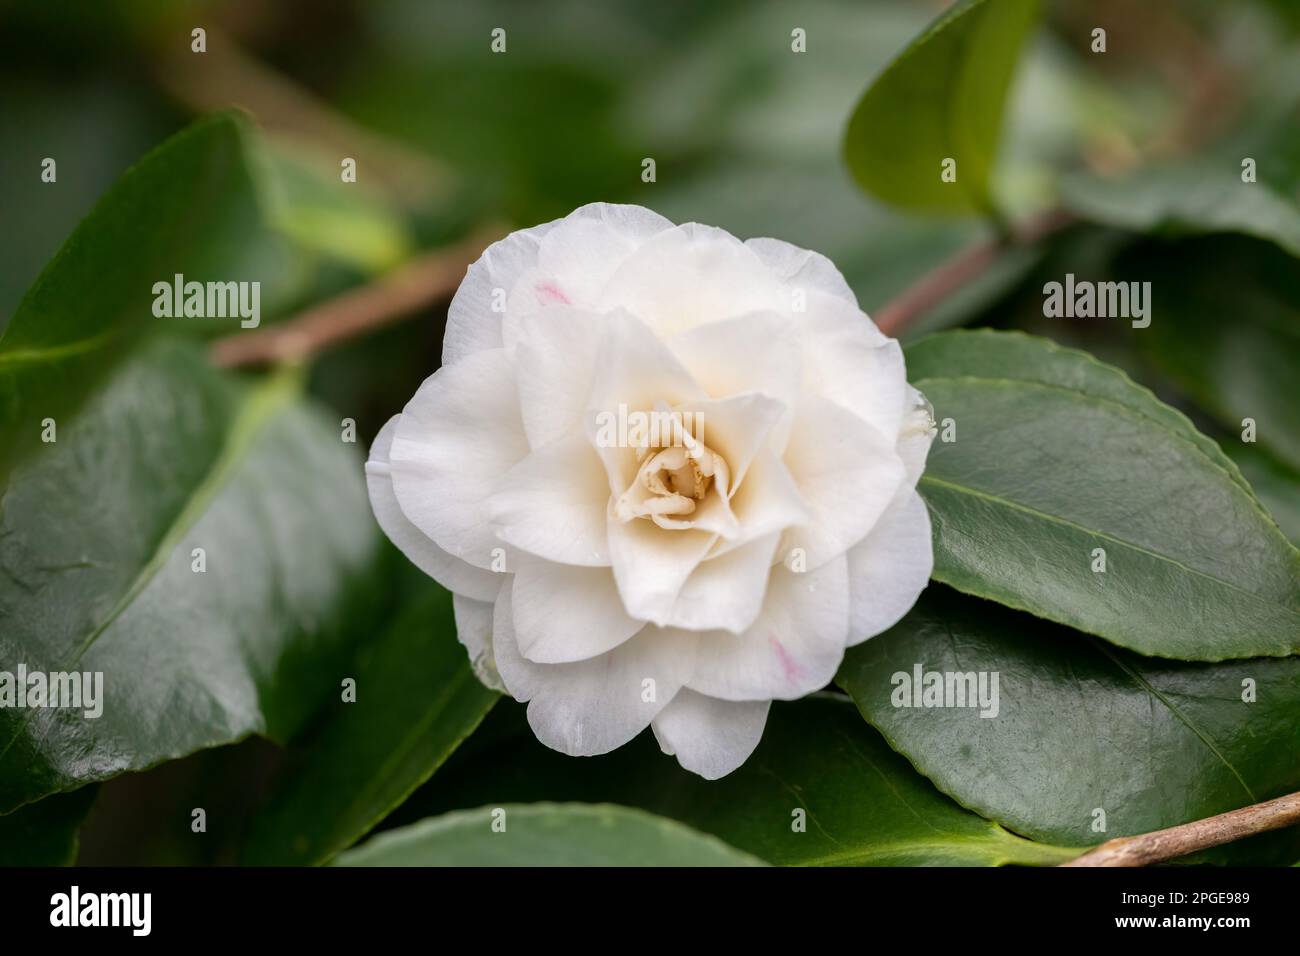 Fleur blanche Camellia en gros plan à la fin de l'hiver. Dorset, Angleterre, Royaume-Uni Banque D'Images